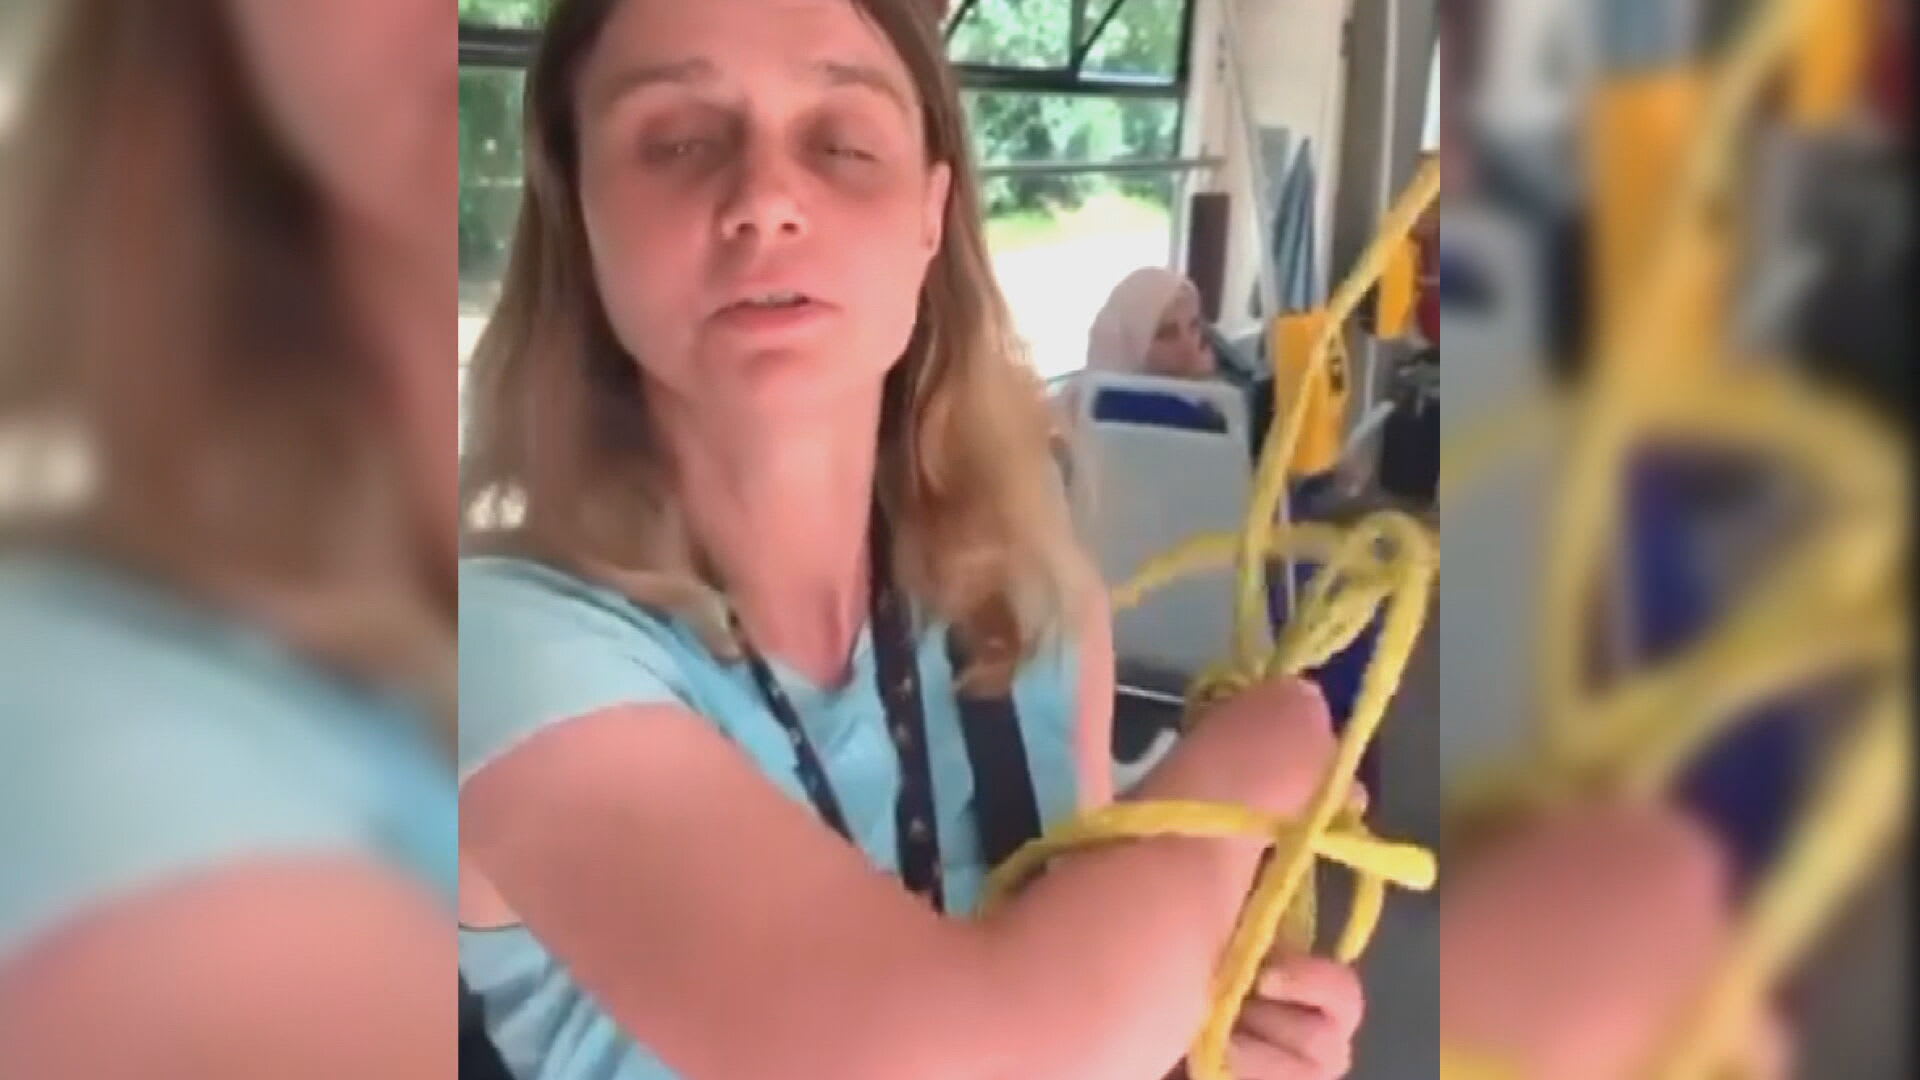 Recidivistka Alice Večerková napadla vodítkem muže v tramvaji